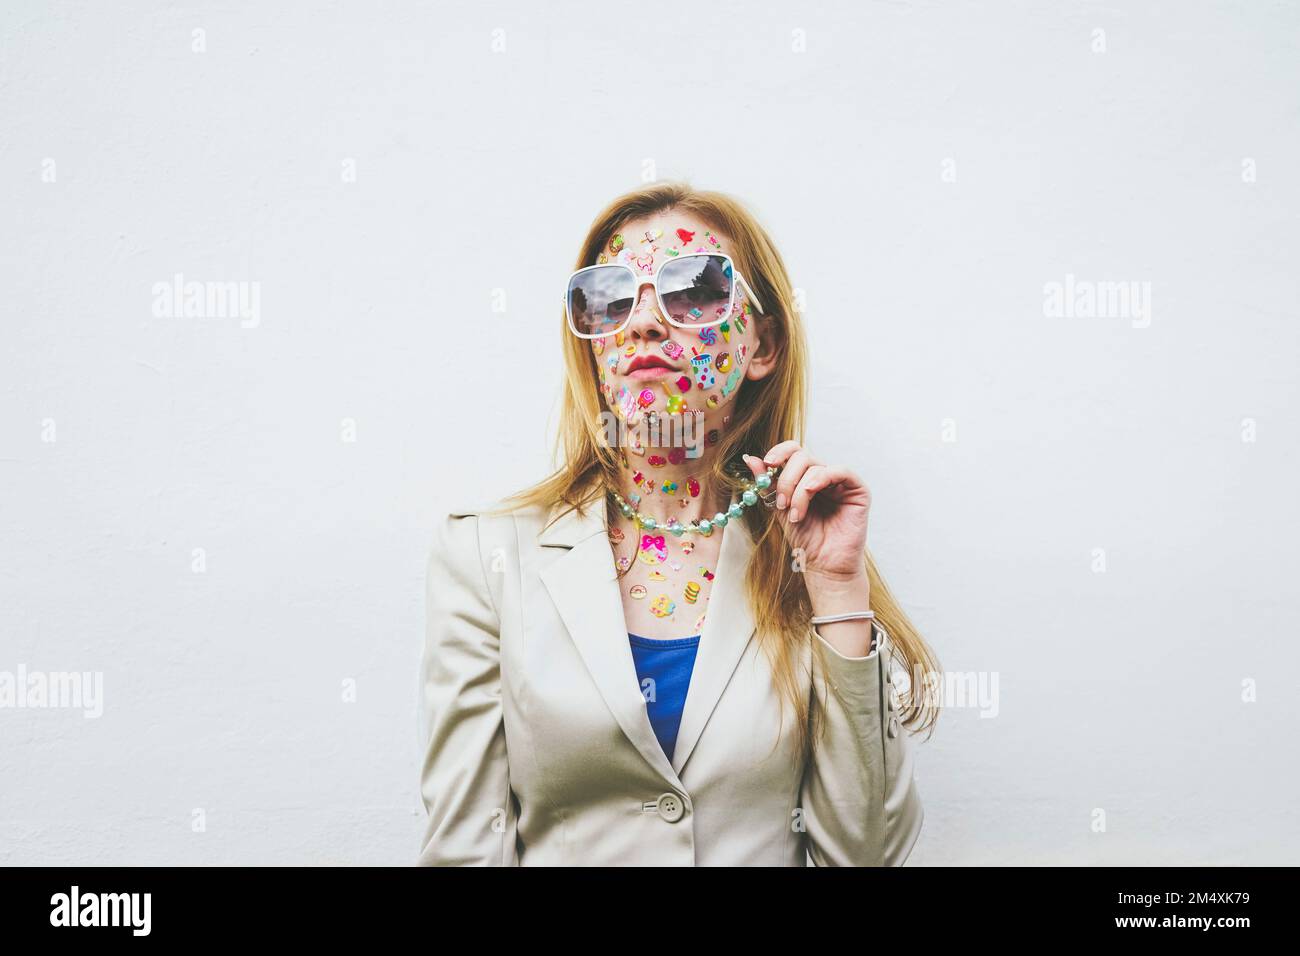 Femme avec des autocollants colorés sur le visage devant un fond blanc Banque D'Images